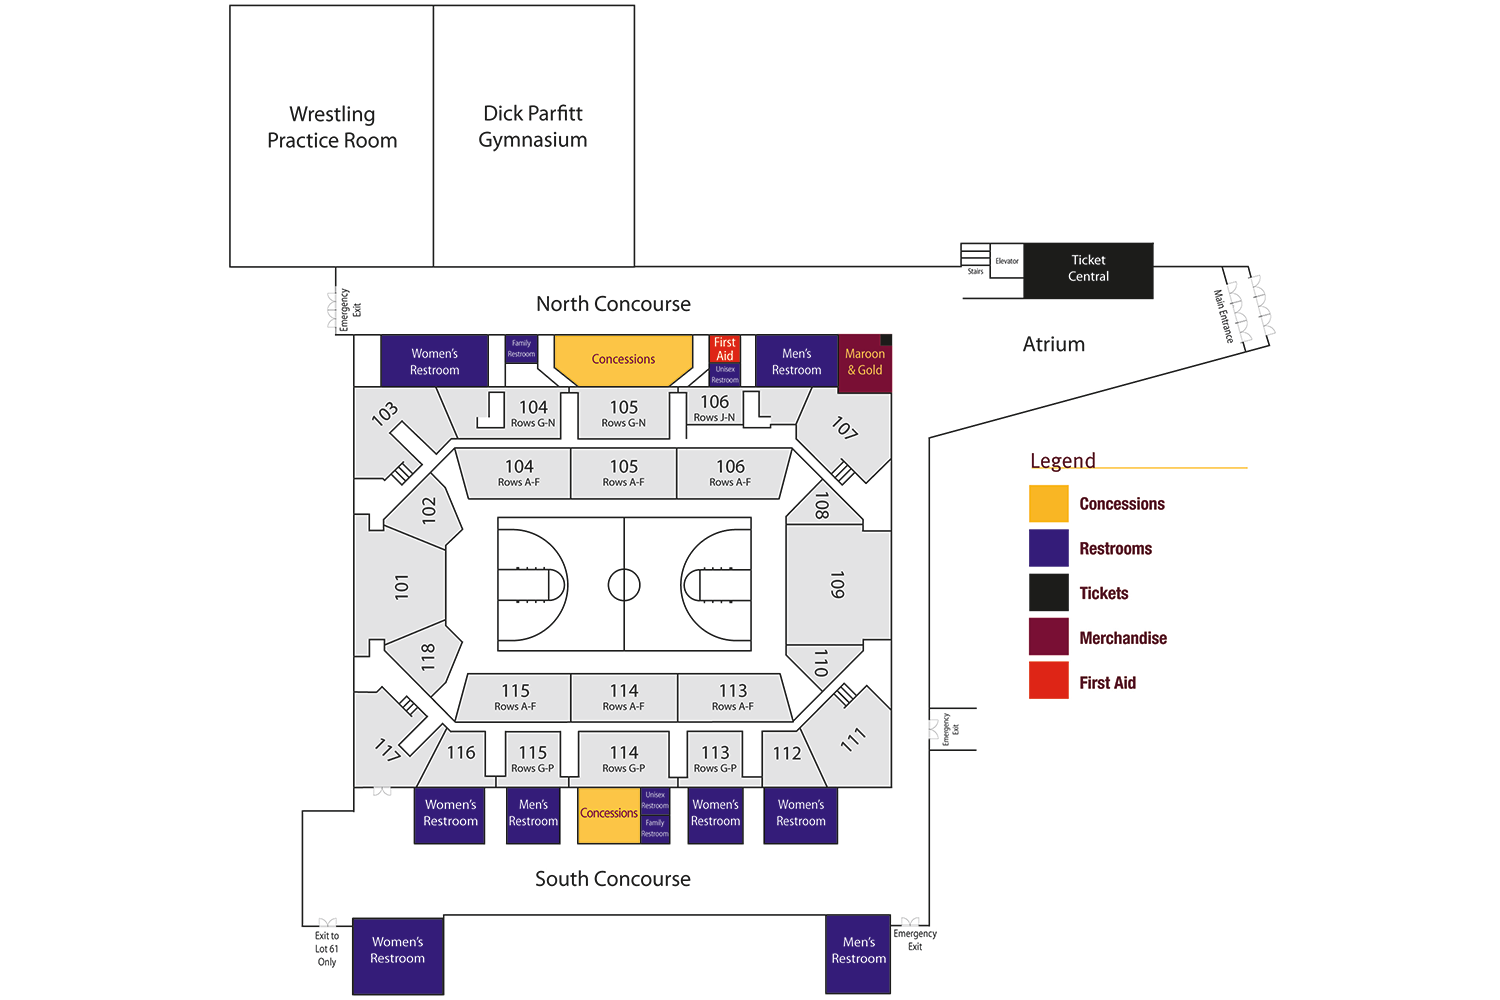 Seating map for the John G. Kulhavi Events Center.